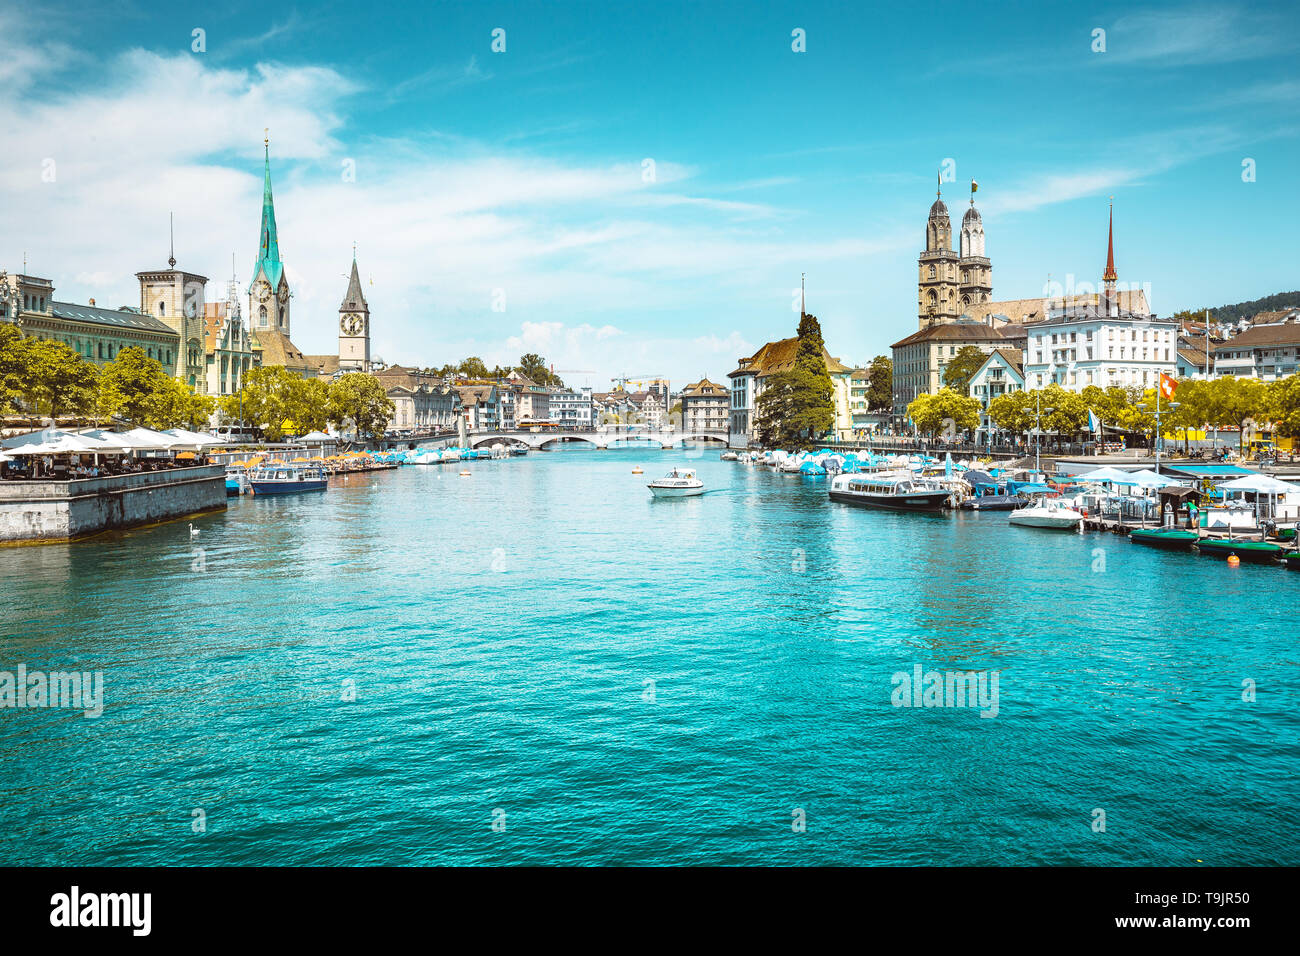 Vista panoramica dello storico centro di Zurigo con il famoso fiume Limmat presso il lago di Zurigo in una giornata di sole con le nuvole in estate, Svizzera Foto Stock